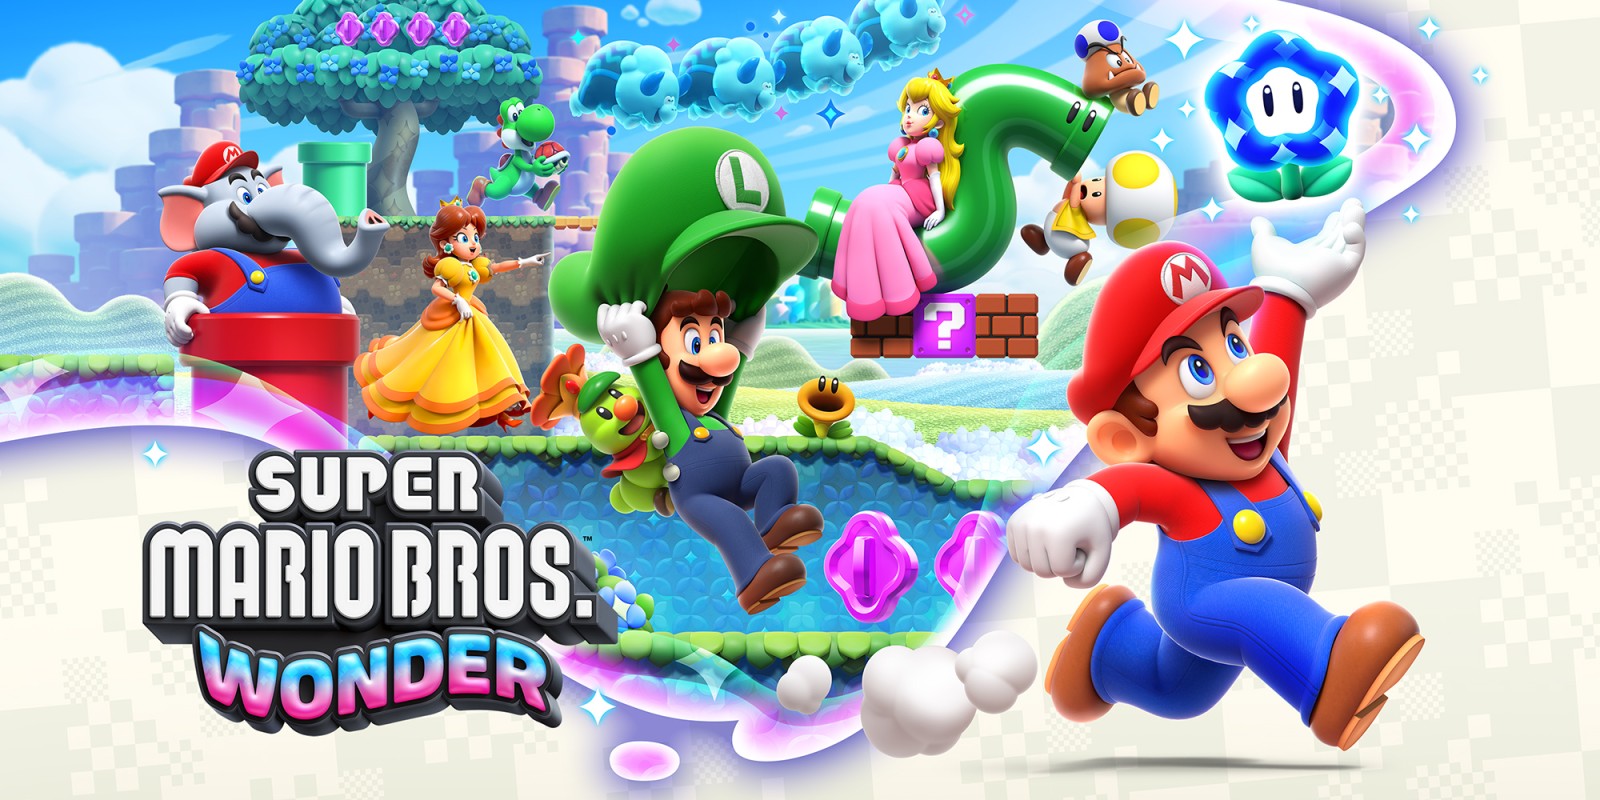 Super Mario Bros. Wonder elimina el salto bomba sincronizado, una de las mecánicas cooperativas más divertidas de la saga